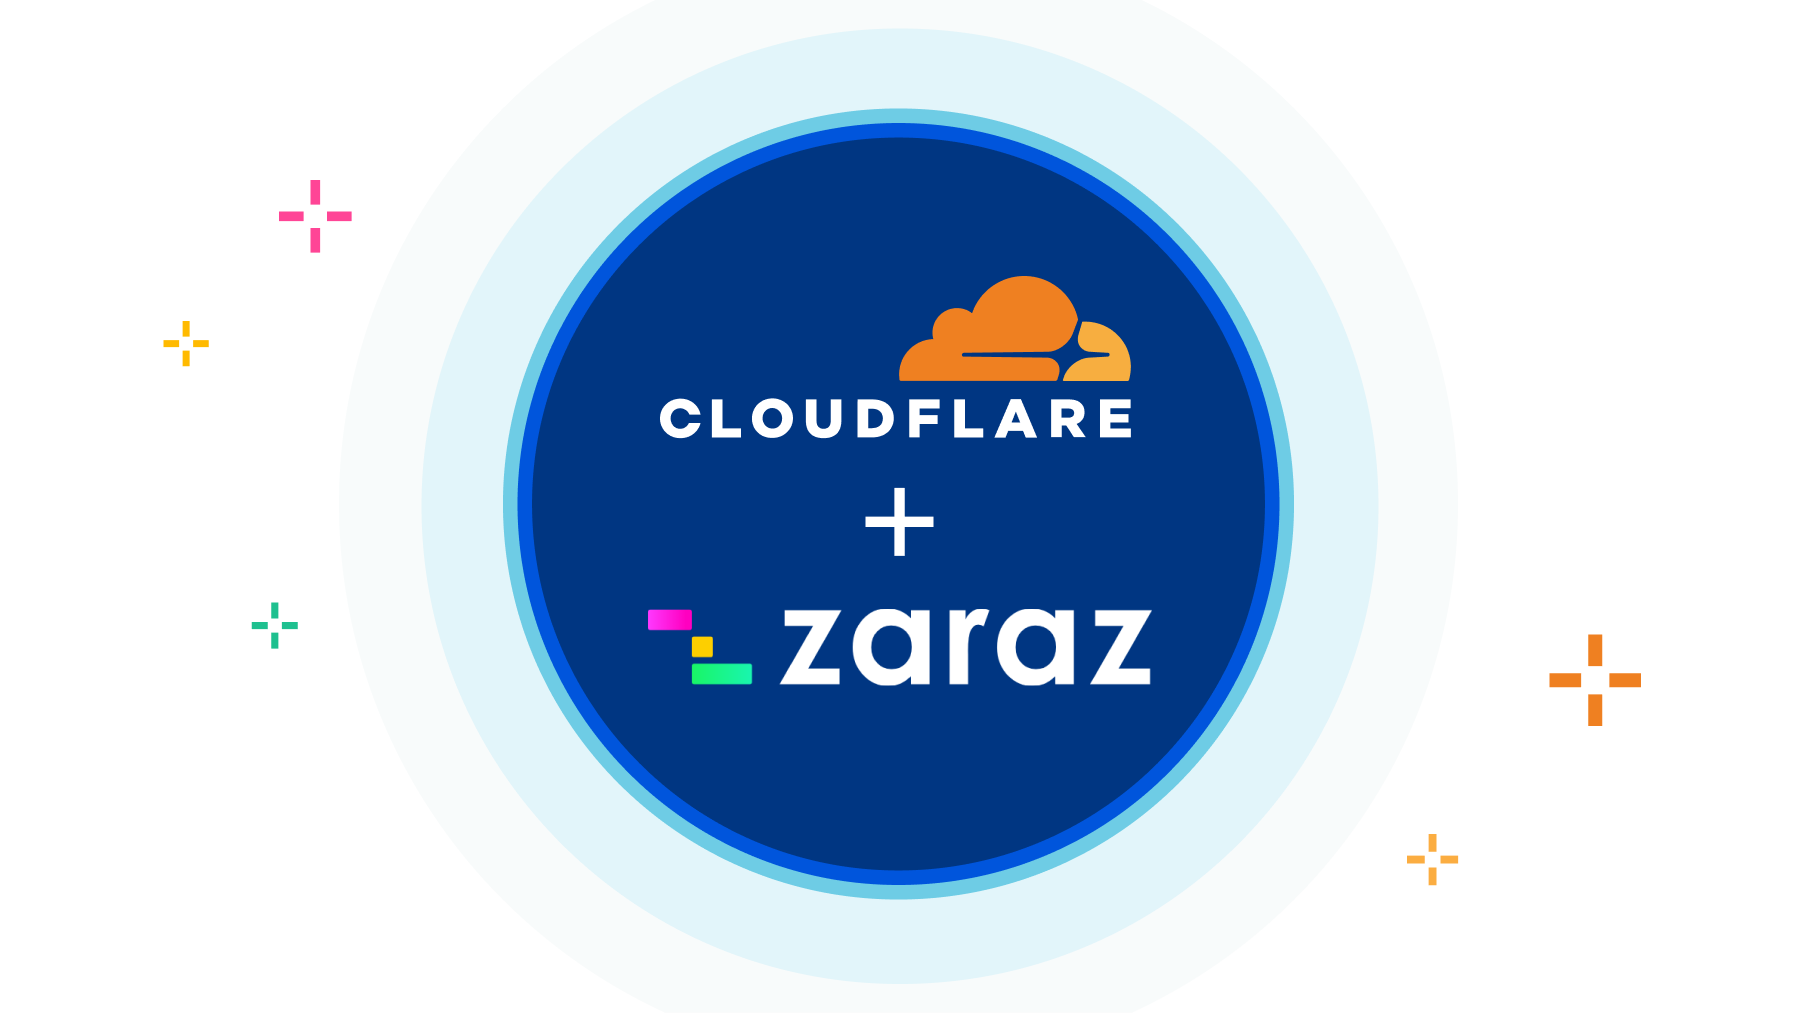 ทำไม Cloudflare ถึงซื้อกิจการบริษัท Zaraz